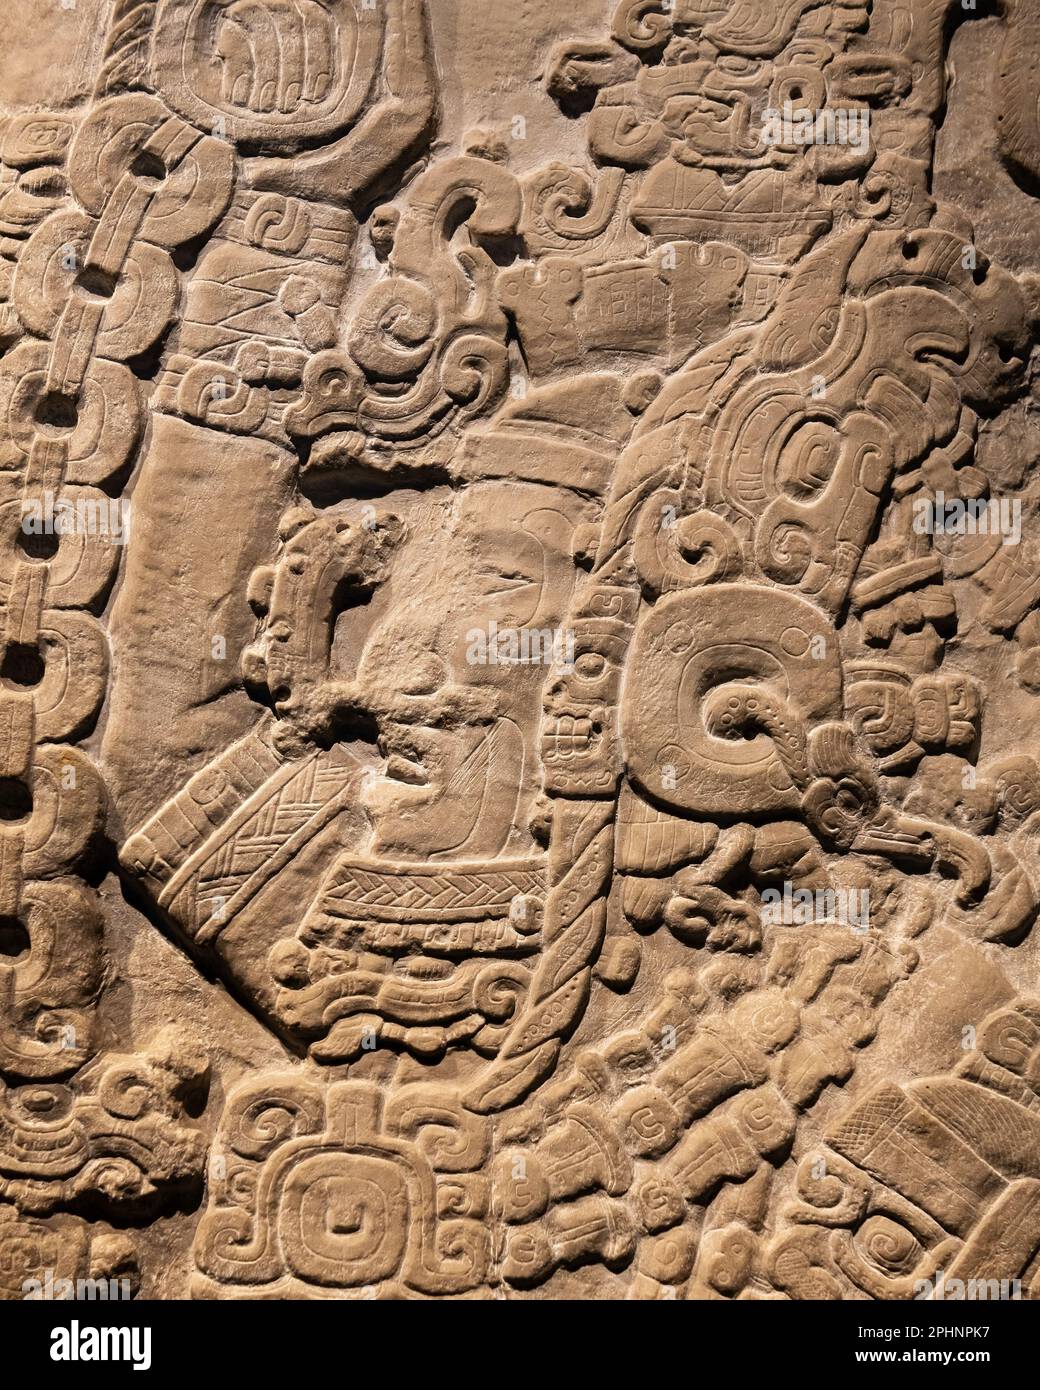 Maya bas relief sculpture d'un roi de la ville maya Tikal au Guatemala, Mexico, Mexique. Banque D'Images